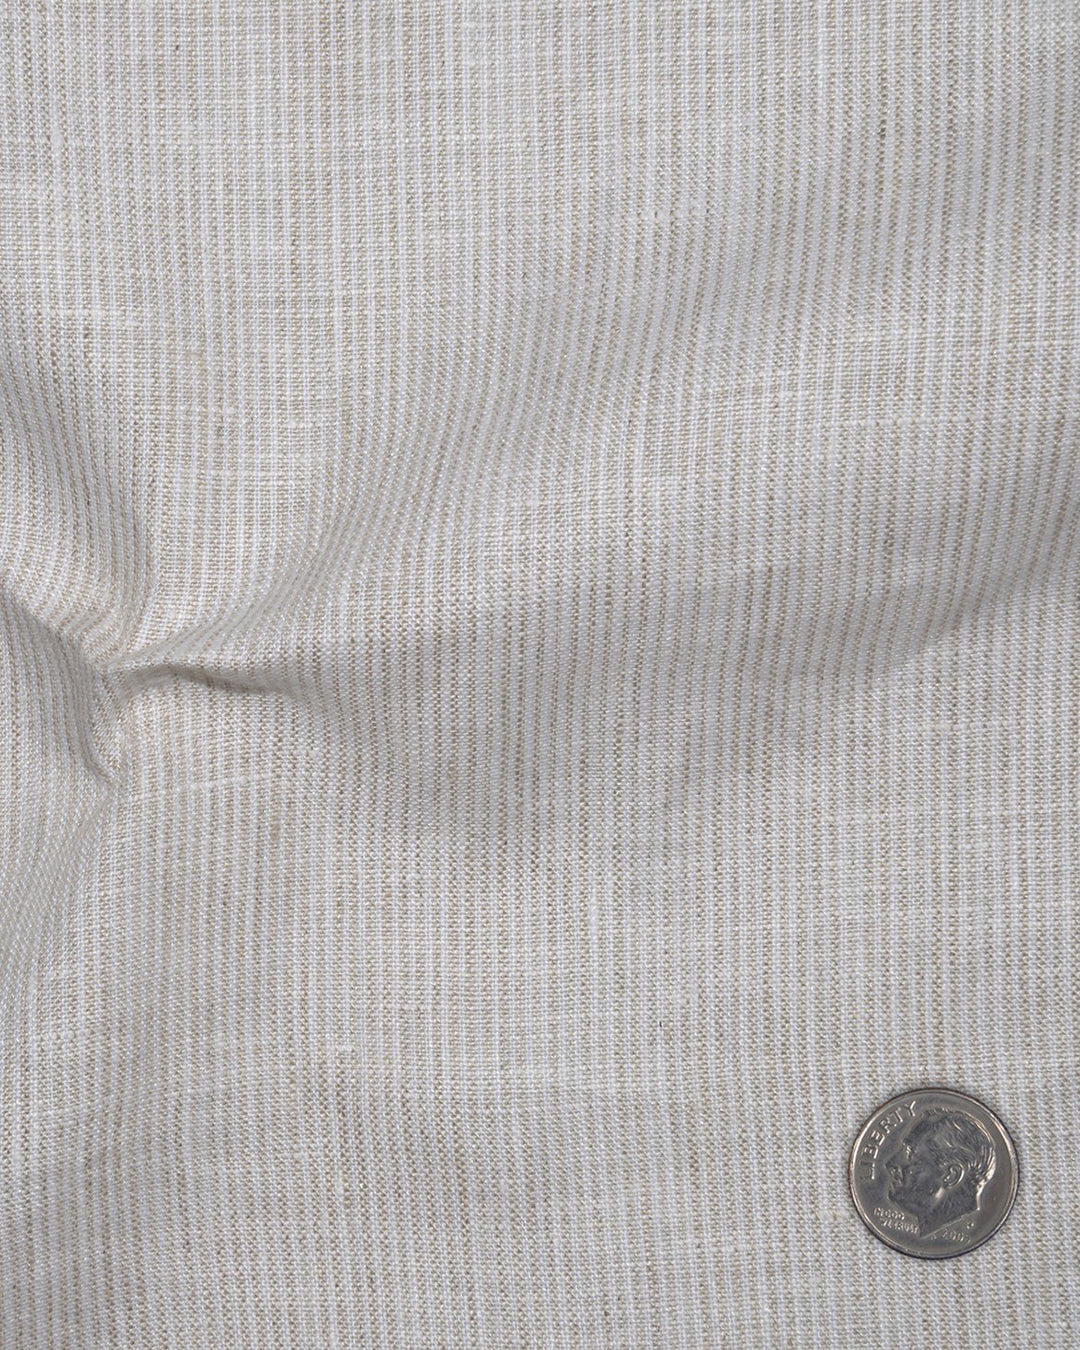 Ecru White Dress Stripes Linen